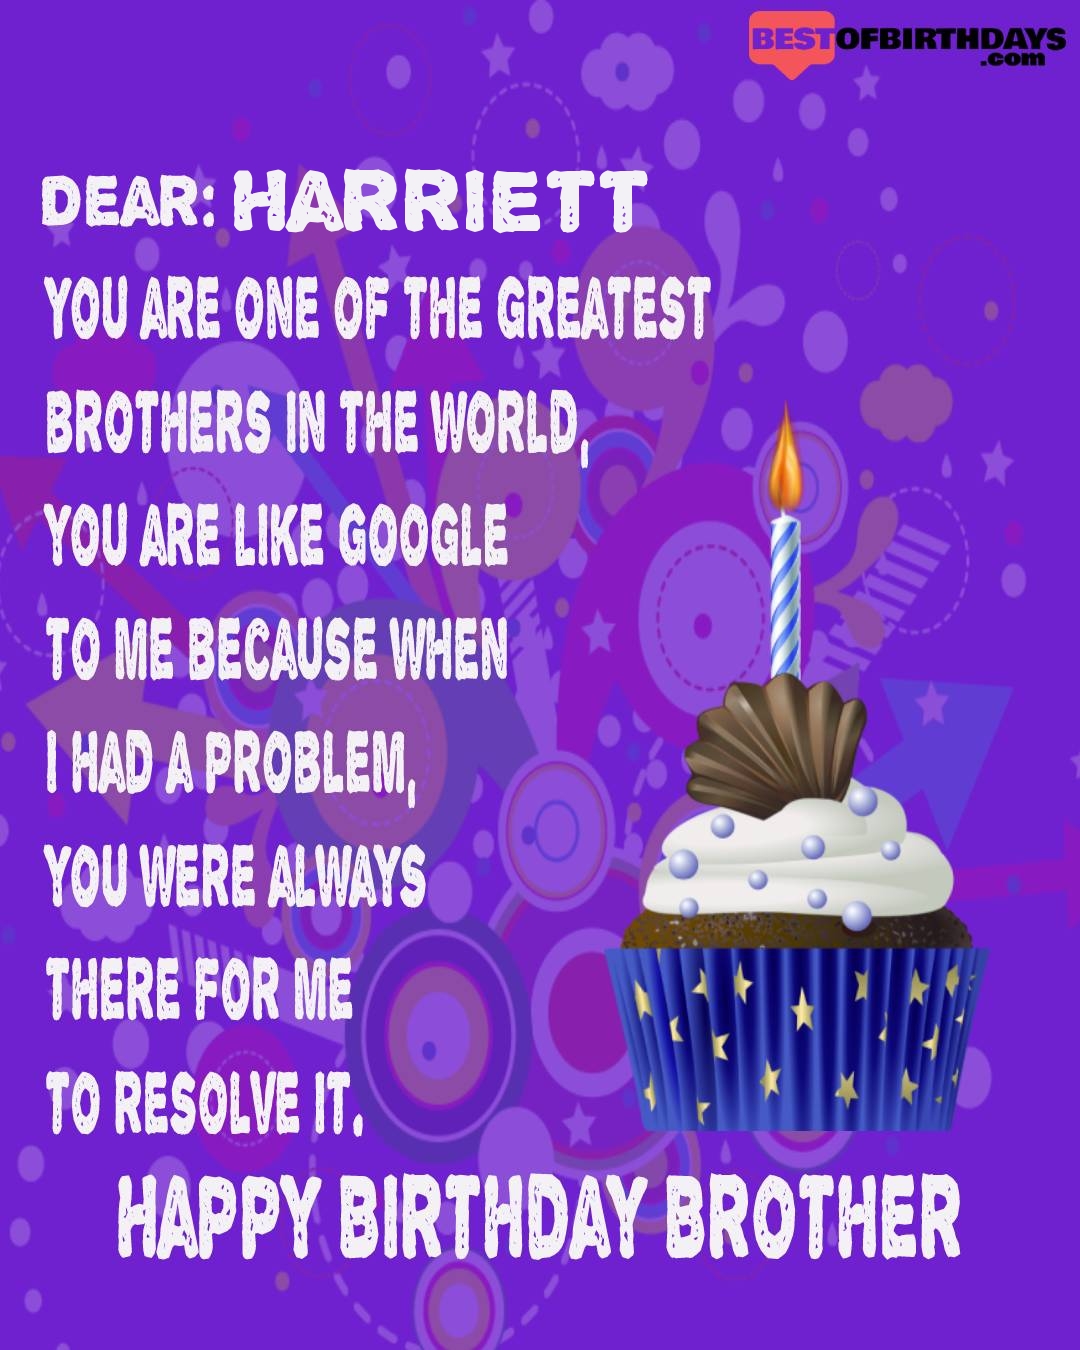 Happy birthday harriett bhai brother bro